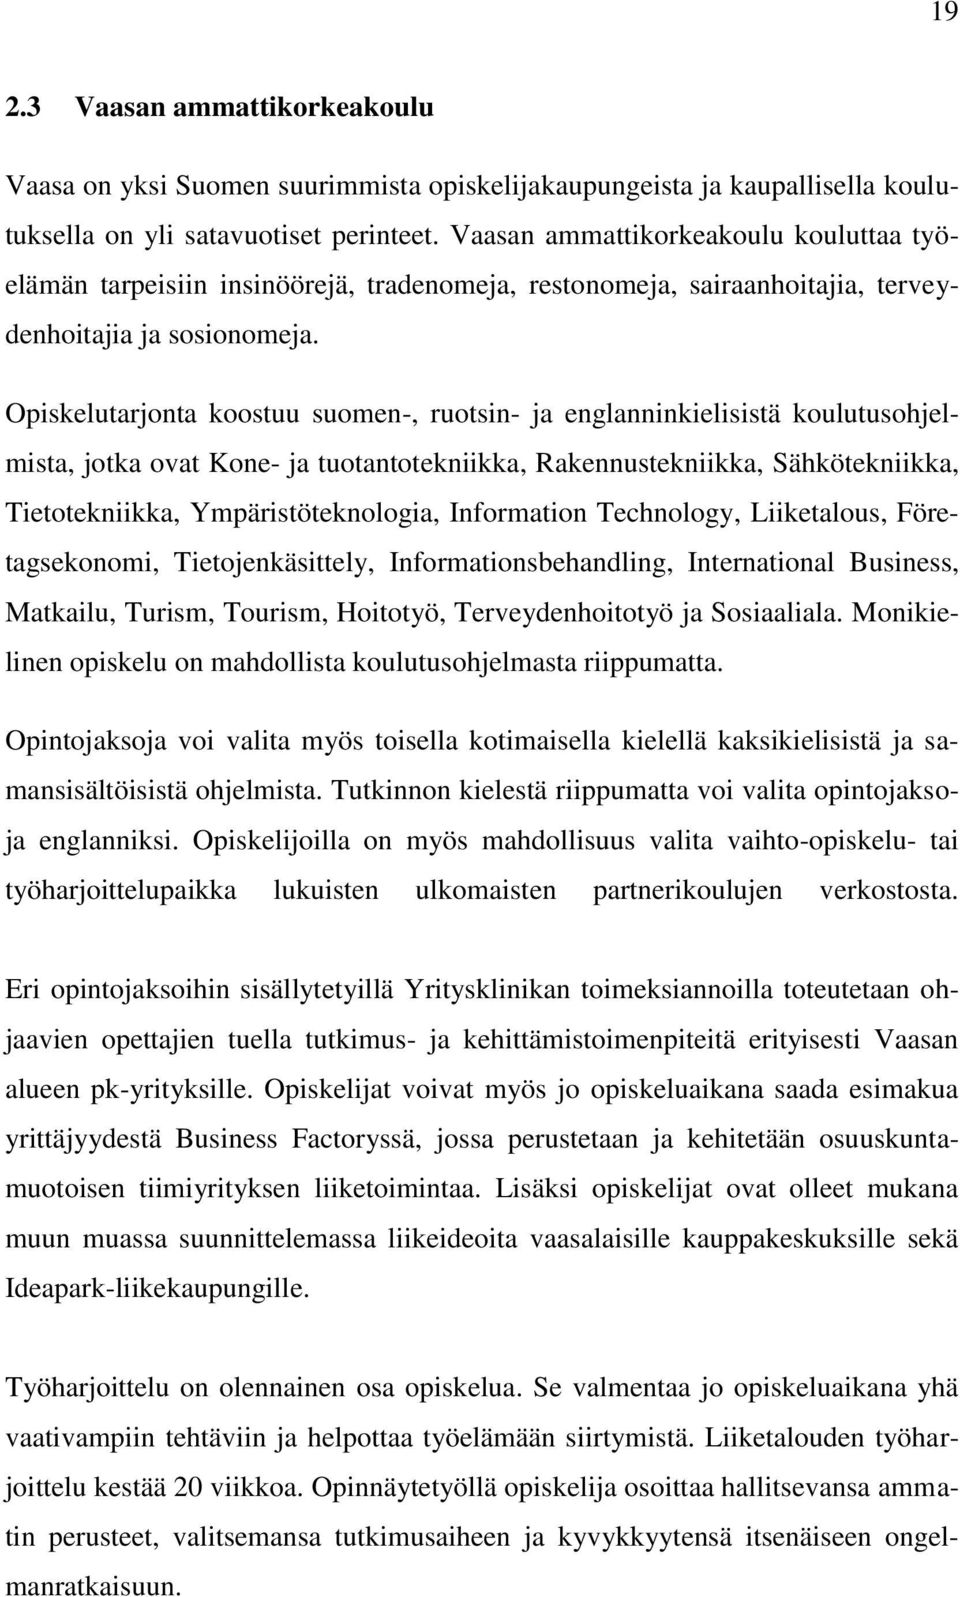 Opiskelutarjonta koostuu suomen-, ruotsin- ja englanninkielisistä koulutusohjelmista, jotka ovat Kone- ja tuotantotekniikka, Rakennustekniikka, Sähkötekniikka, Tietotekniikka, Ympäristöteknologia,